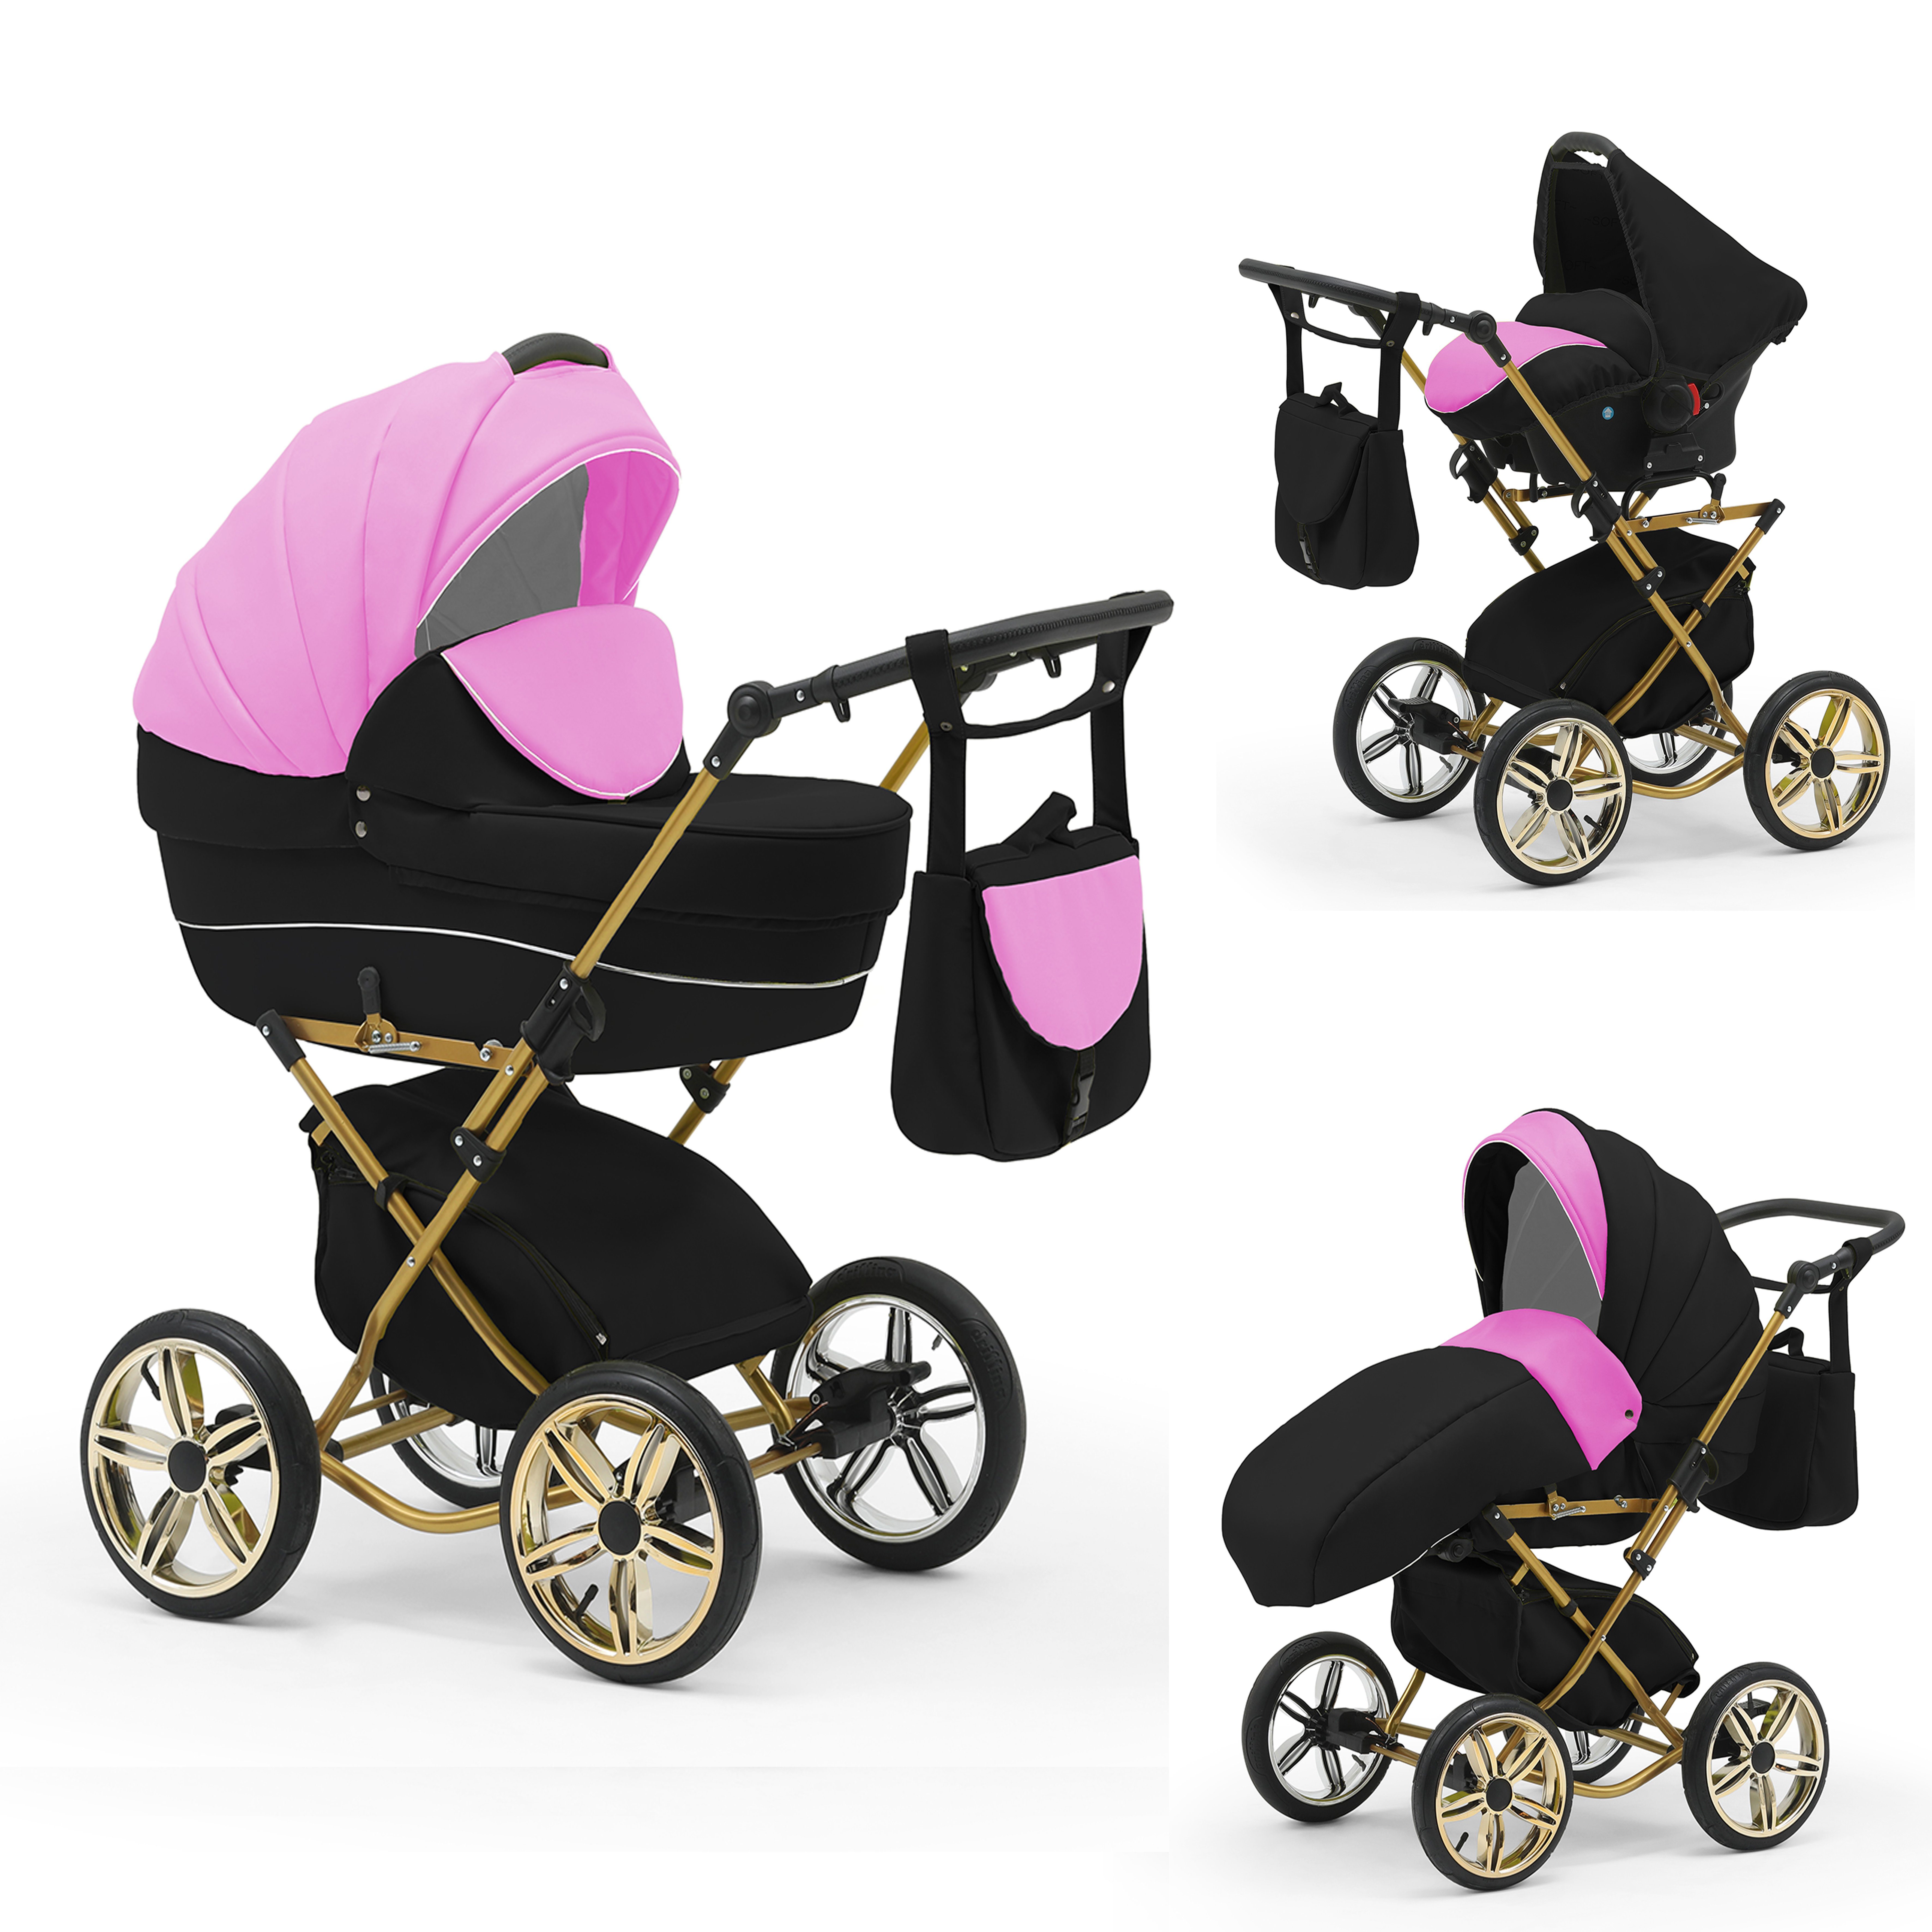 babies-on-wheels Kombi-Kinderwagen Sorento 3 in 1 inkl. Autositz - 13 Teile - in 10 Designs Pink-Schwarz